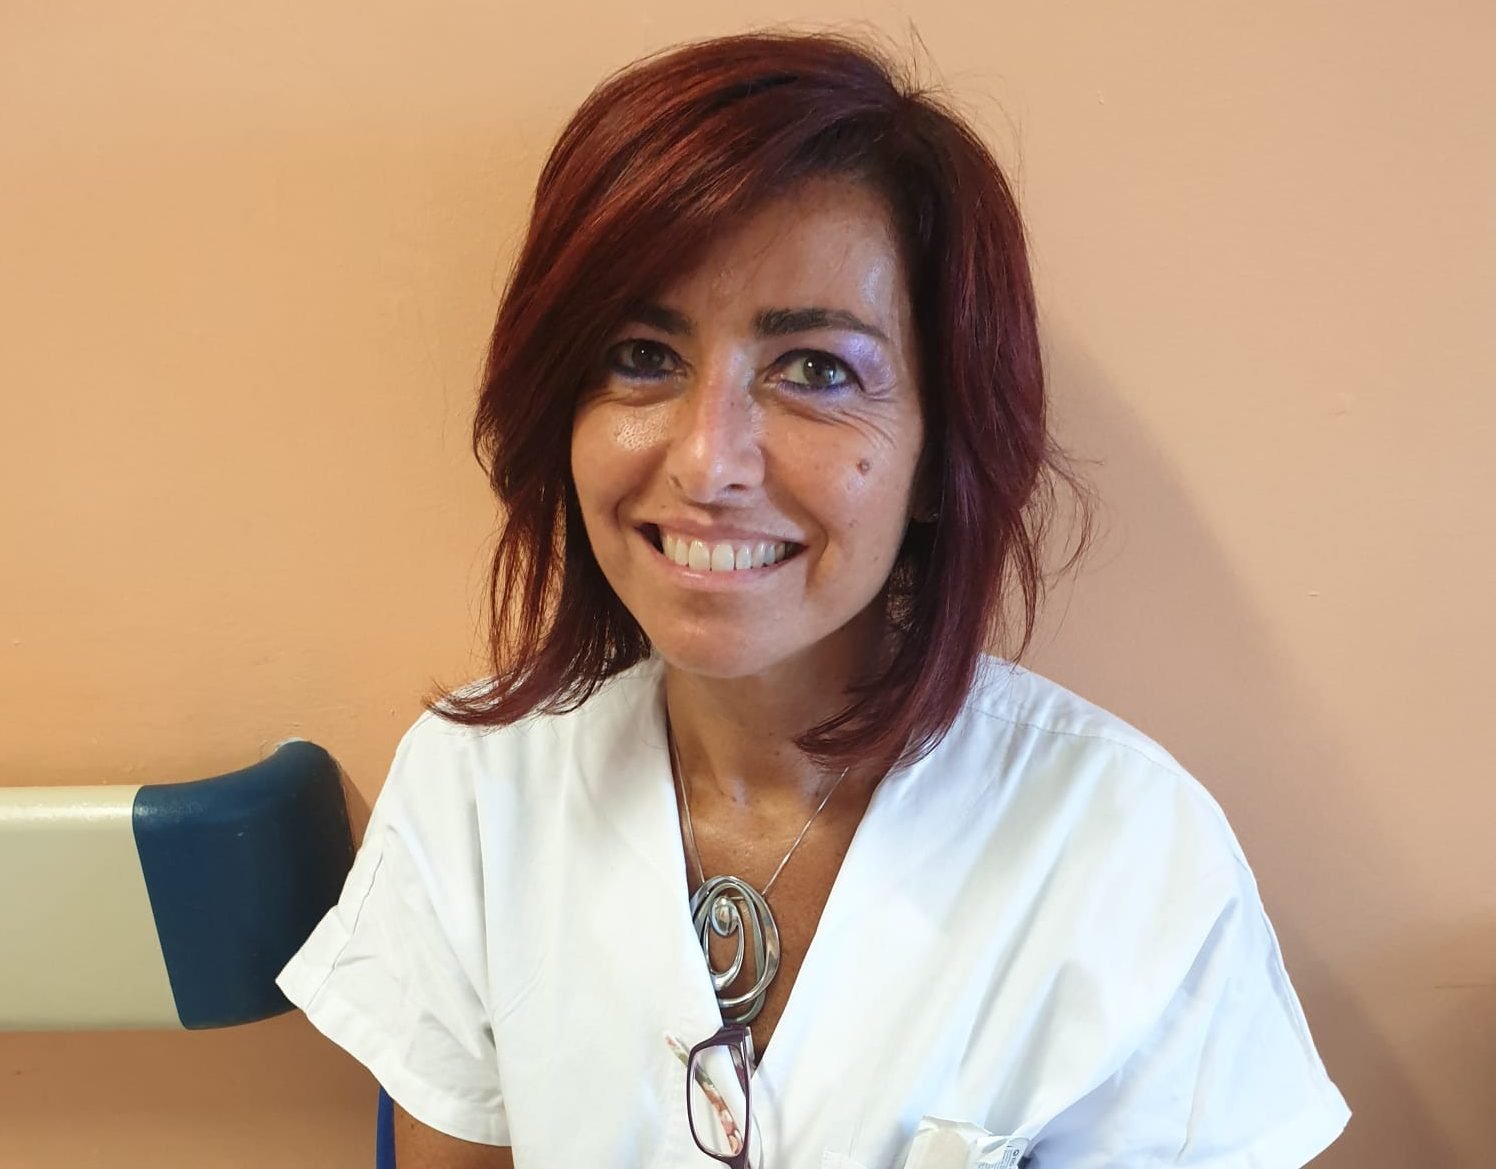 Delfina Ferrandi è il nuovo primario all’ospedale di Casale Monferrato 